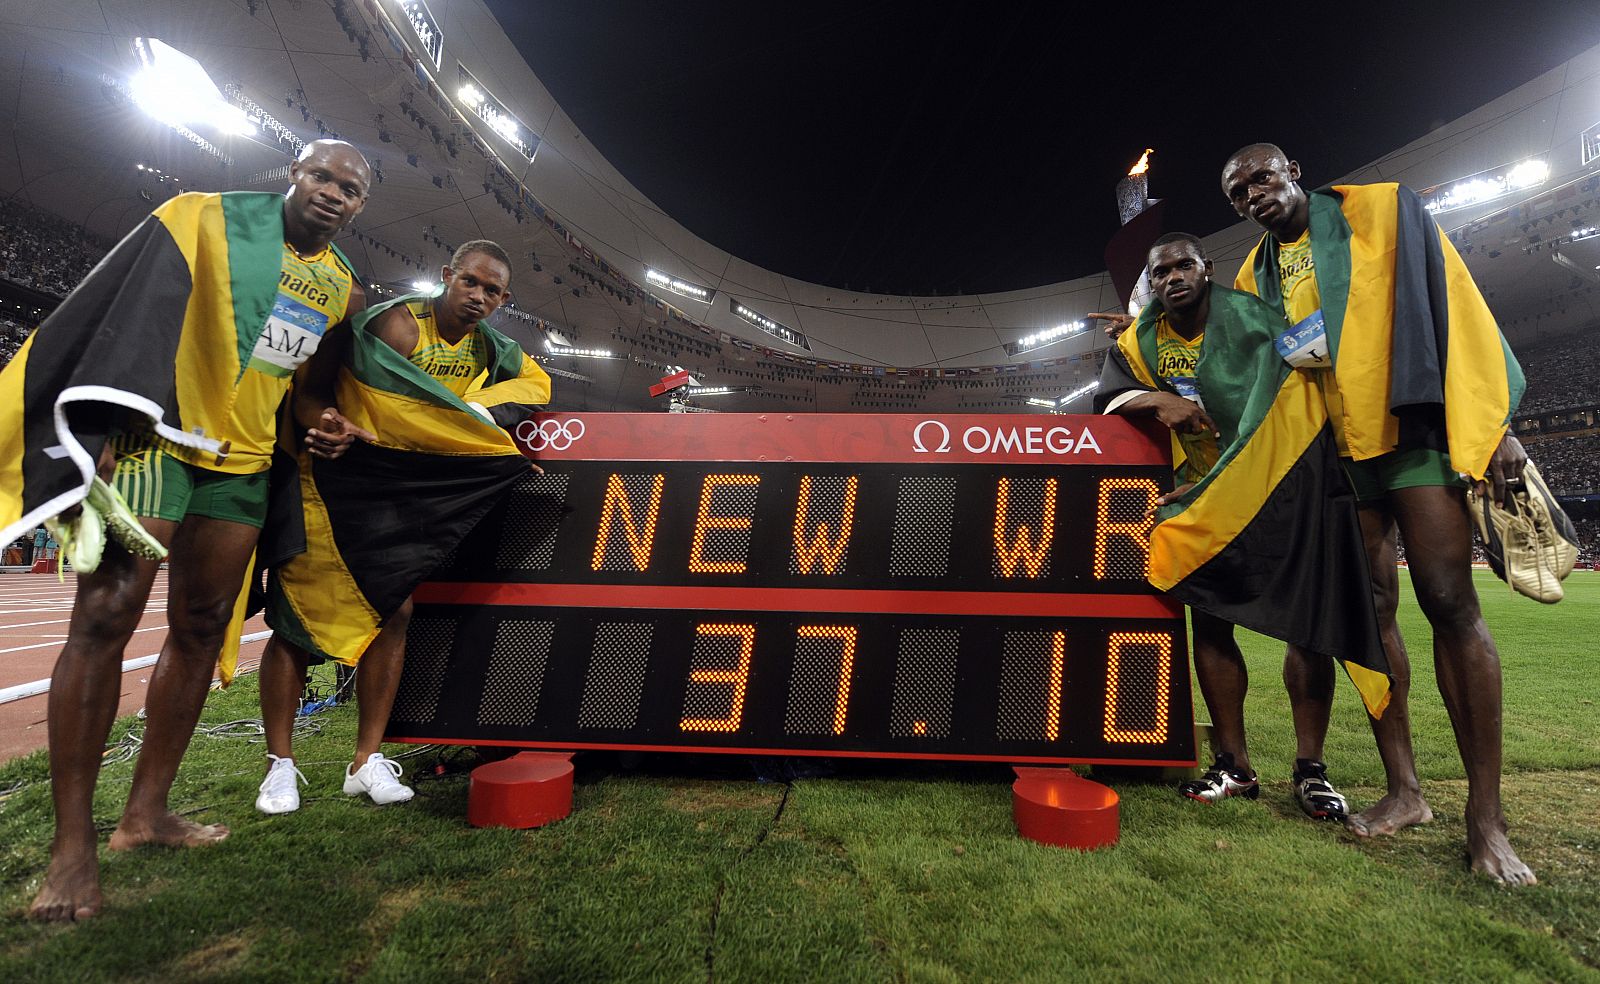 El equipo jamaicano de 4 x100 bate el récord del mundo con una marca de 37.10.